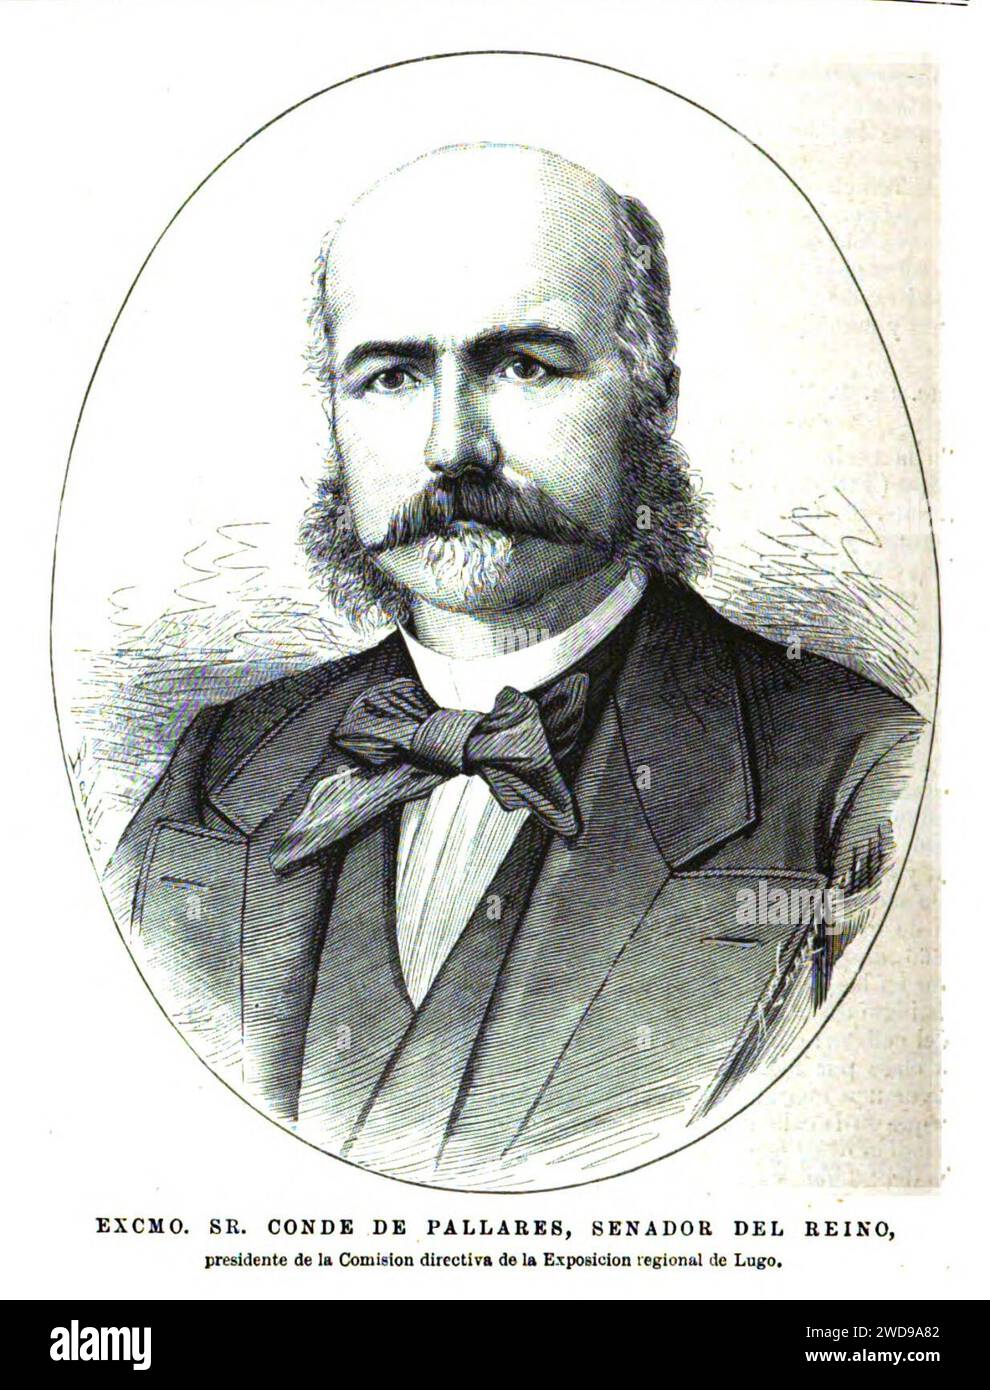 1877-11-15, La Ilustración Española y Americana, Conde de Pallarés, senador del reino. Stock Photo